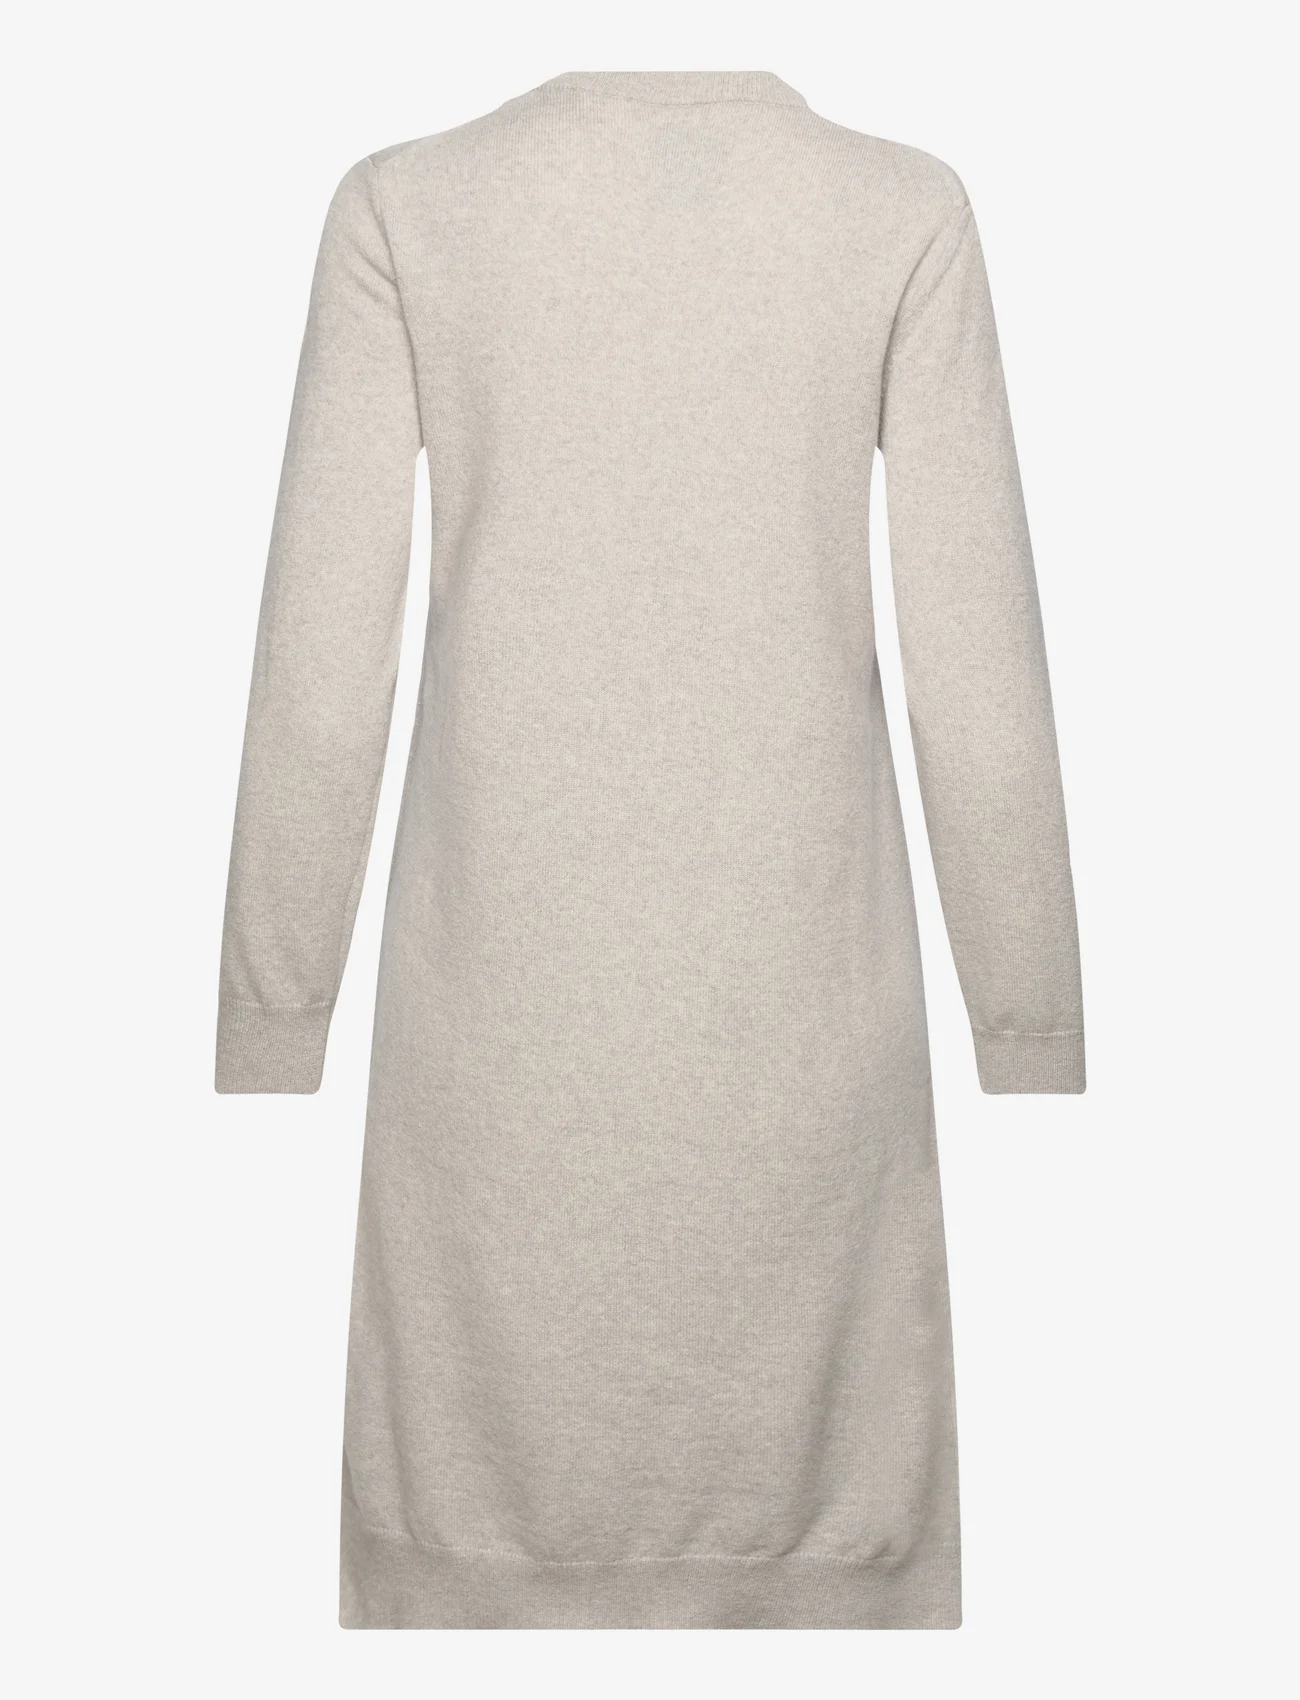 GANT - SUPERFINE LAMBSWOOL DRESS - knitted dresses - light grey melange - 1